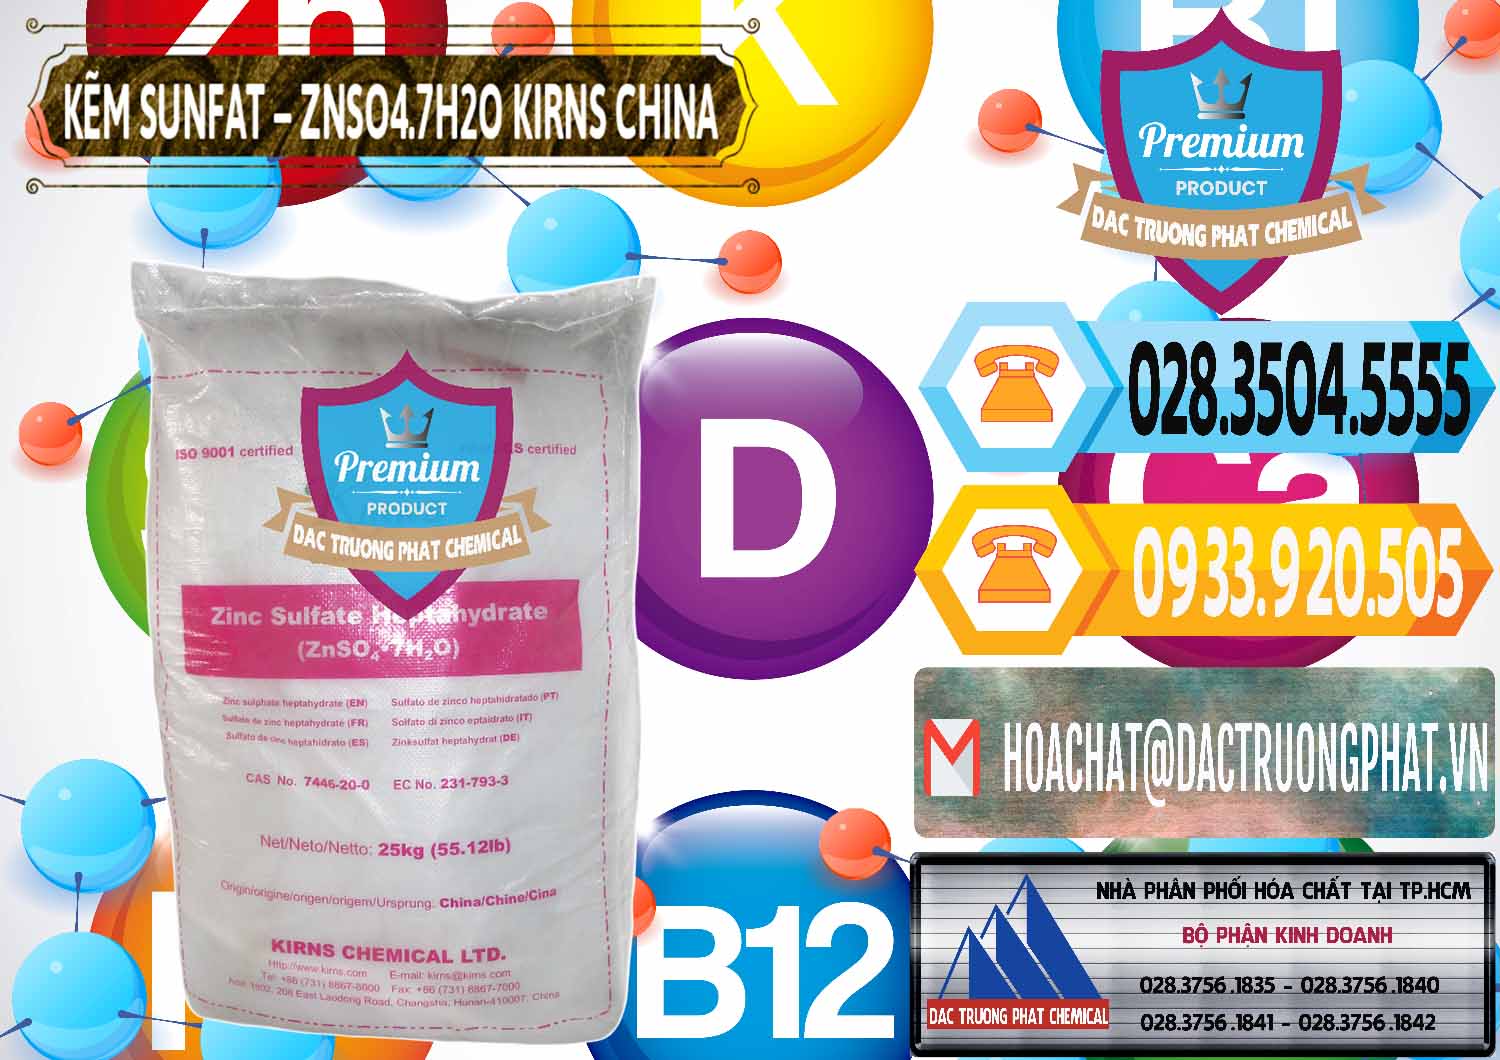 Cty chuyên bán - cung cấp Kẽm Sunfat – ZNSO4.7H2O Kirns Trung Quốc China - 0089 - Nhà cung ứng - phân phối hóa chất tại TP.HCM - hoachattayrua.net